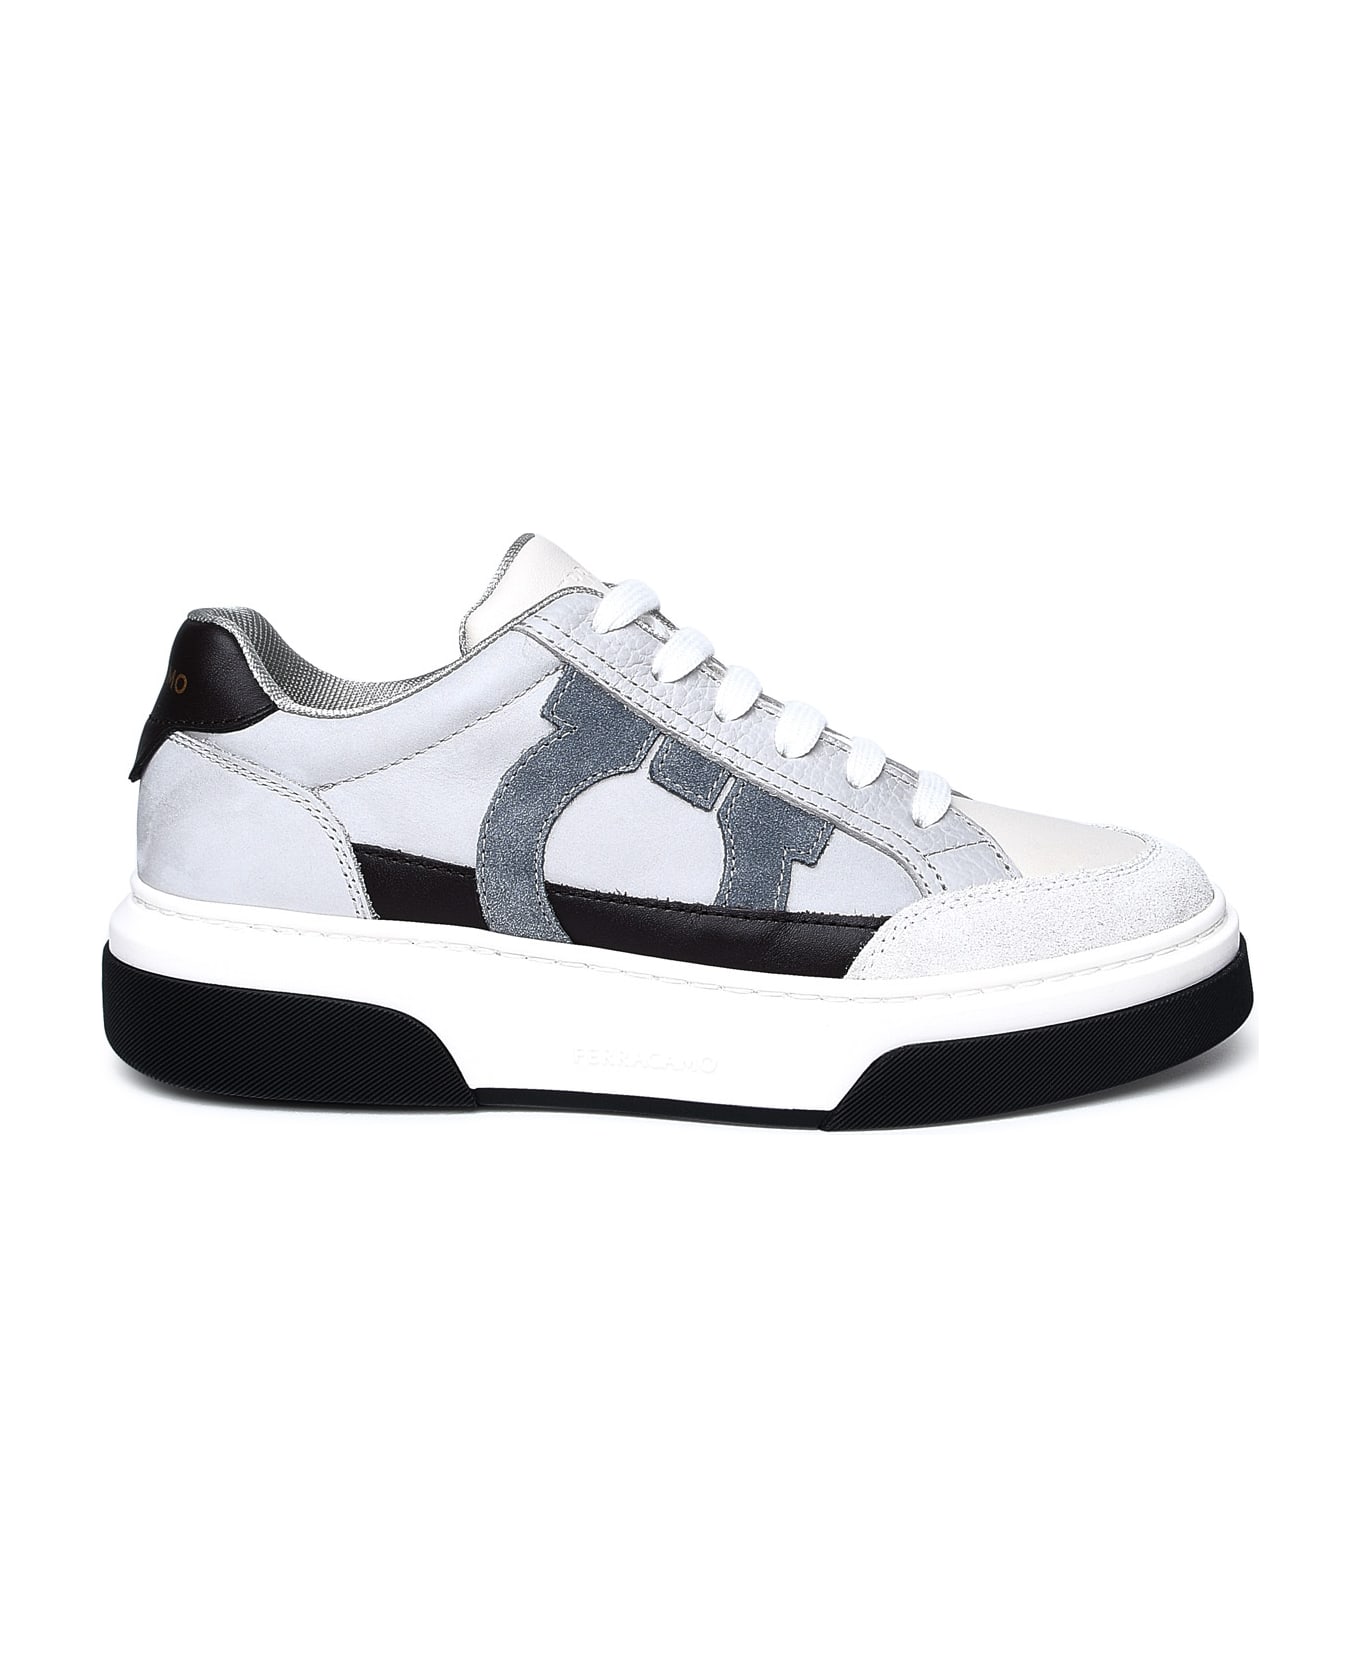 Ferragamo Multicolor Nappa Leather Sneakers - White